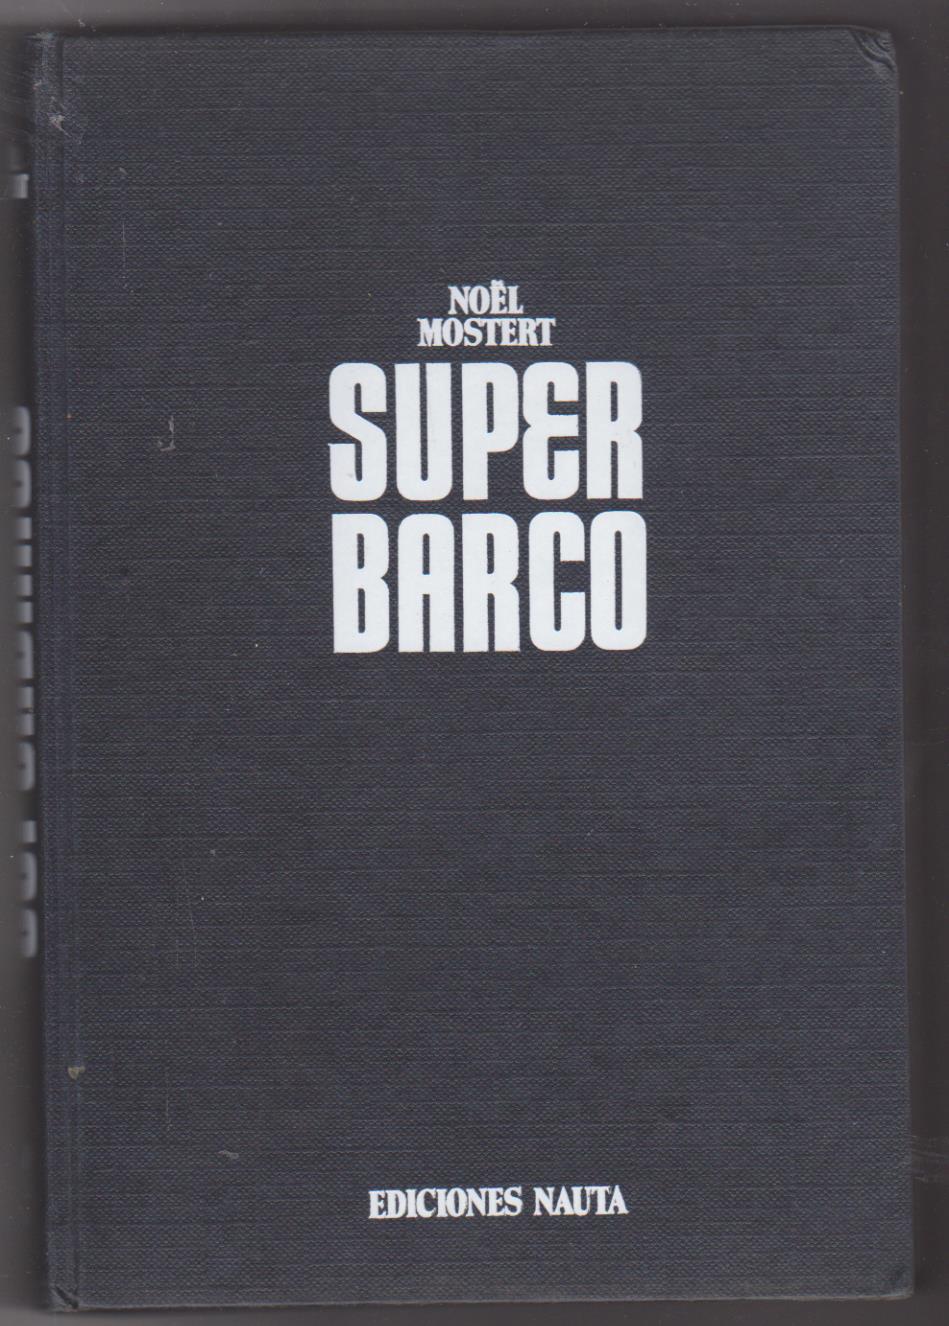 Noel Mostert. Super Barco. Ediciones nauta